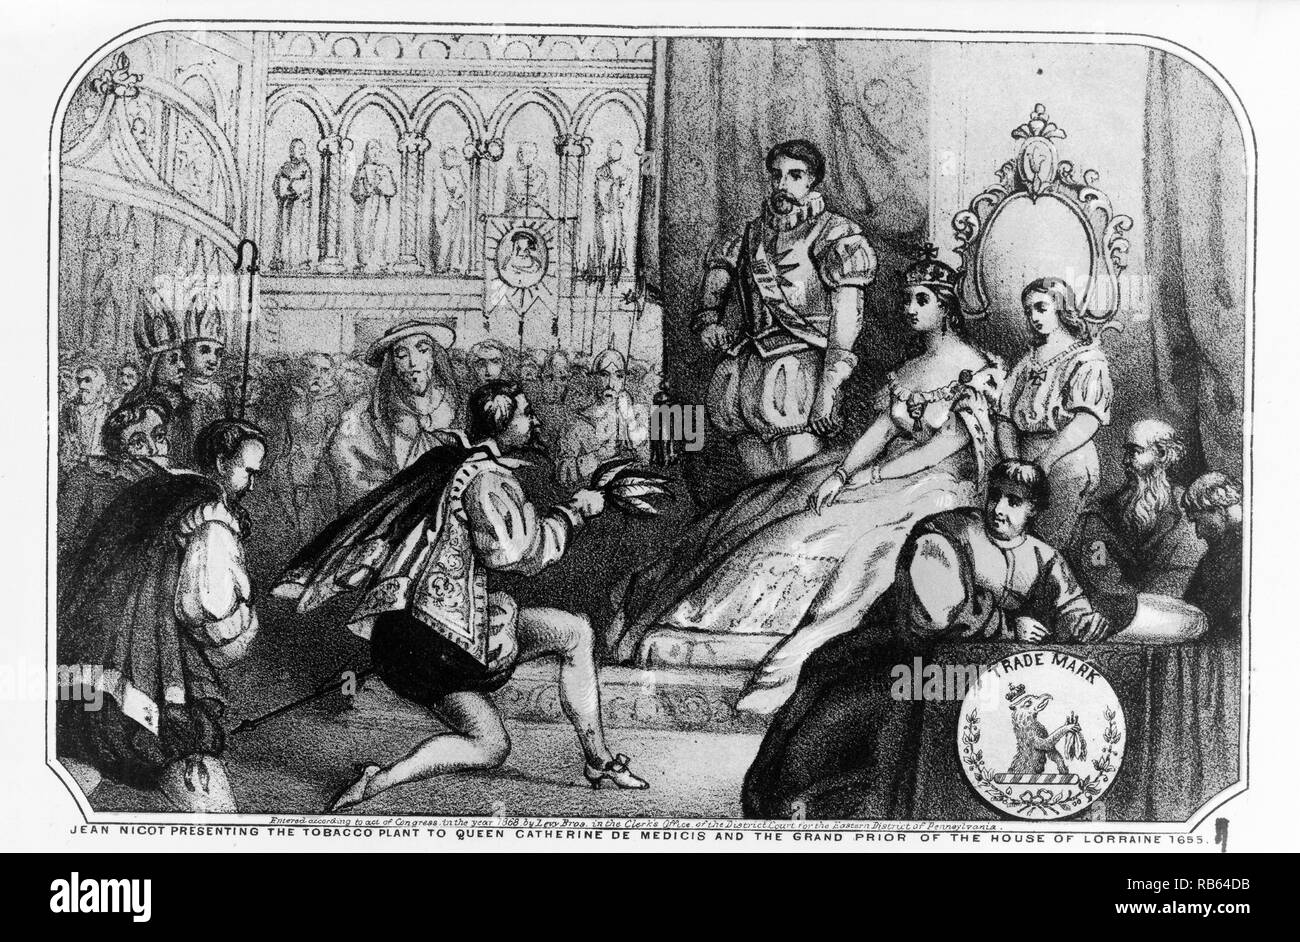 Ilustración de Jean Nicot presentación de la planta de tabaco a la reina Catalina de Médicis y el Gran Prior de la Casa de Lorena. Fecha 1655 Foto de stock